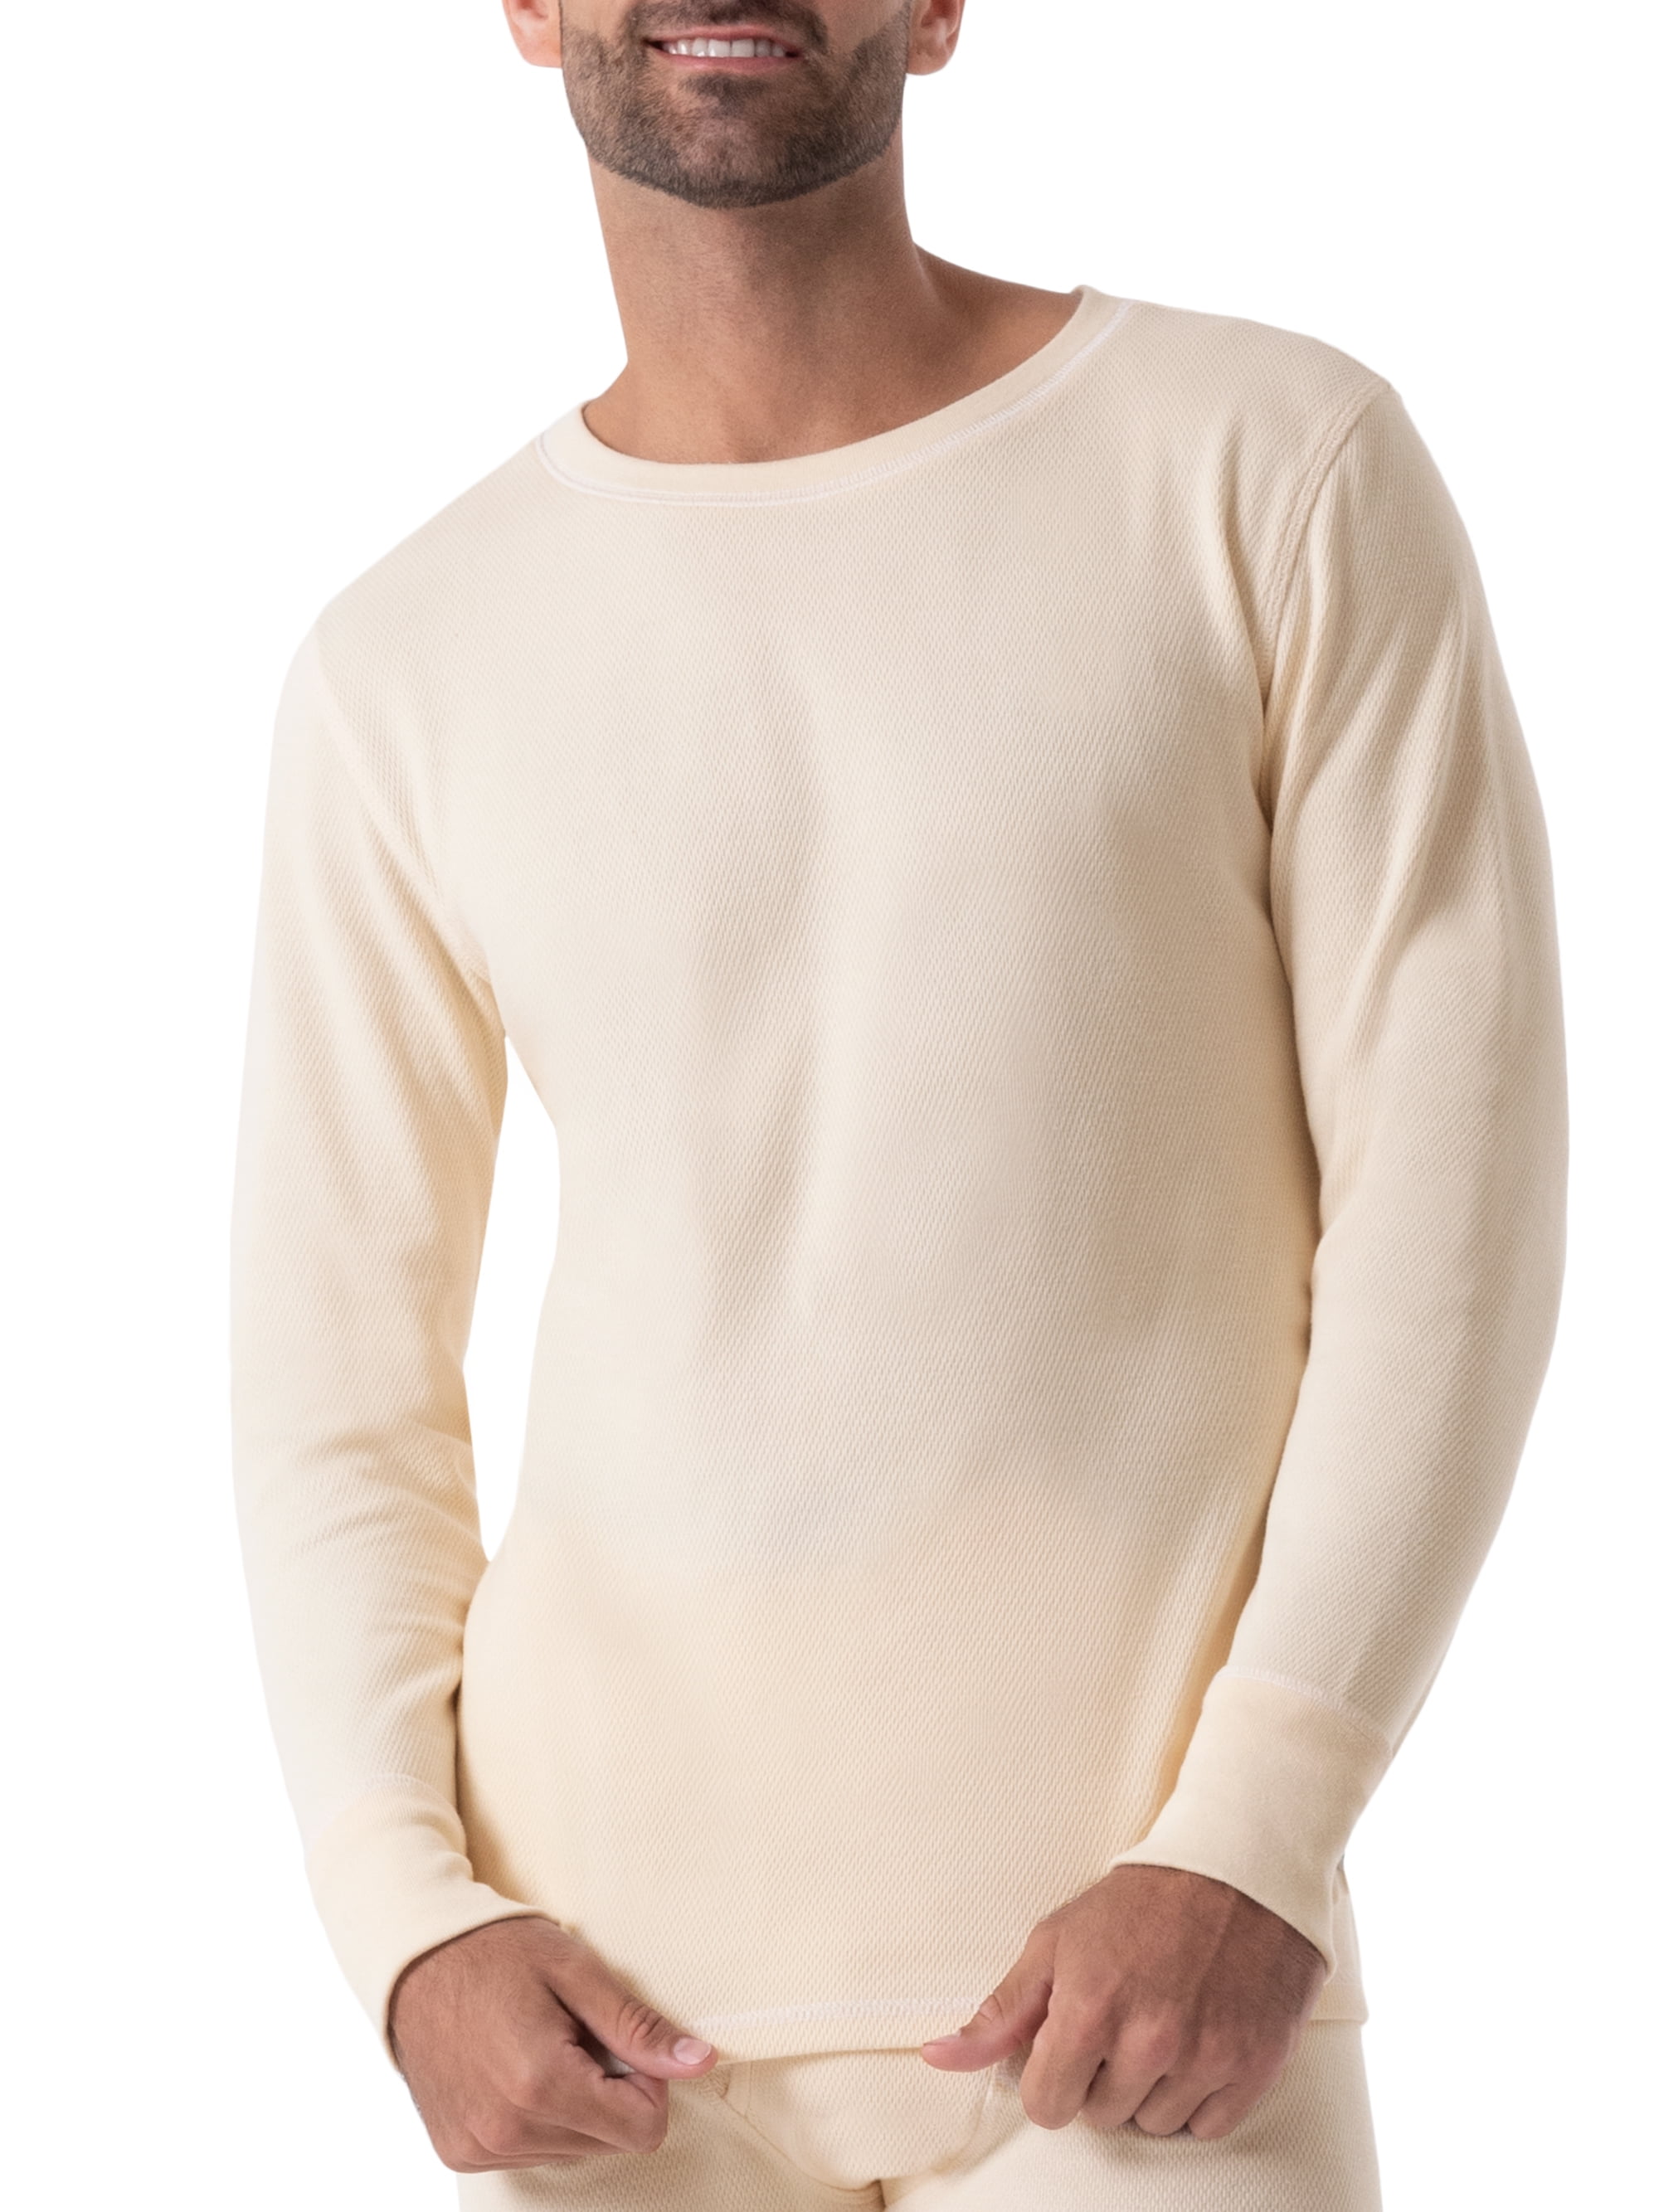 Wrangler Workwear Men's Heavy Weight Cotton Raschel Thermal Top